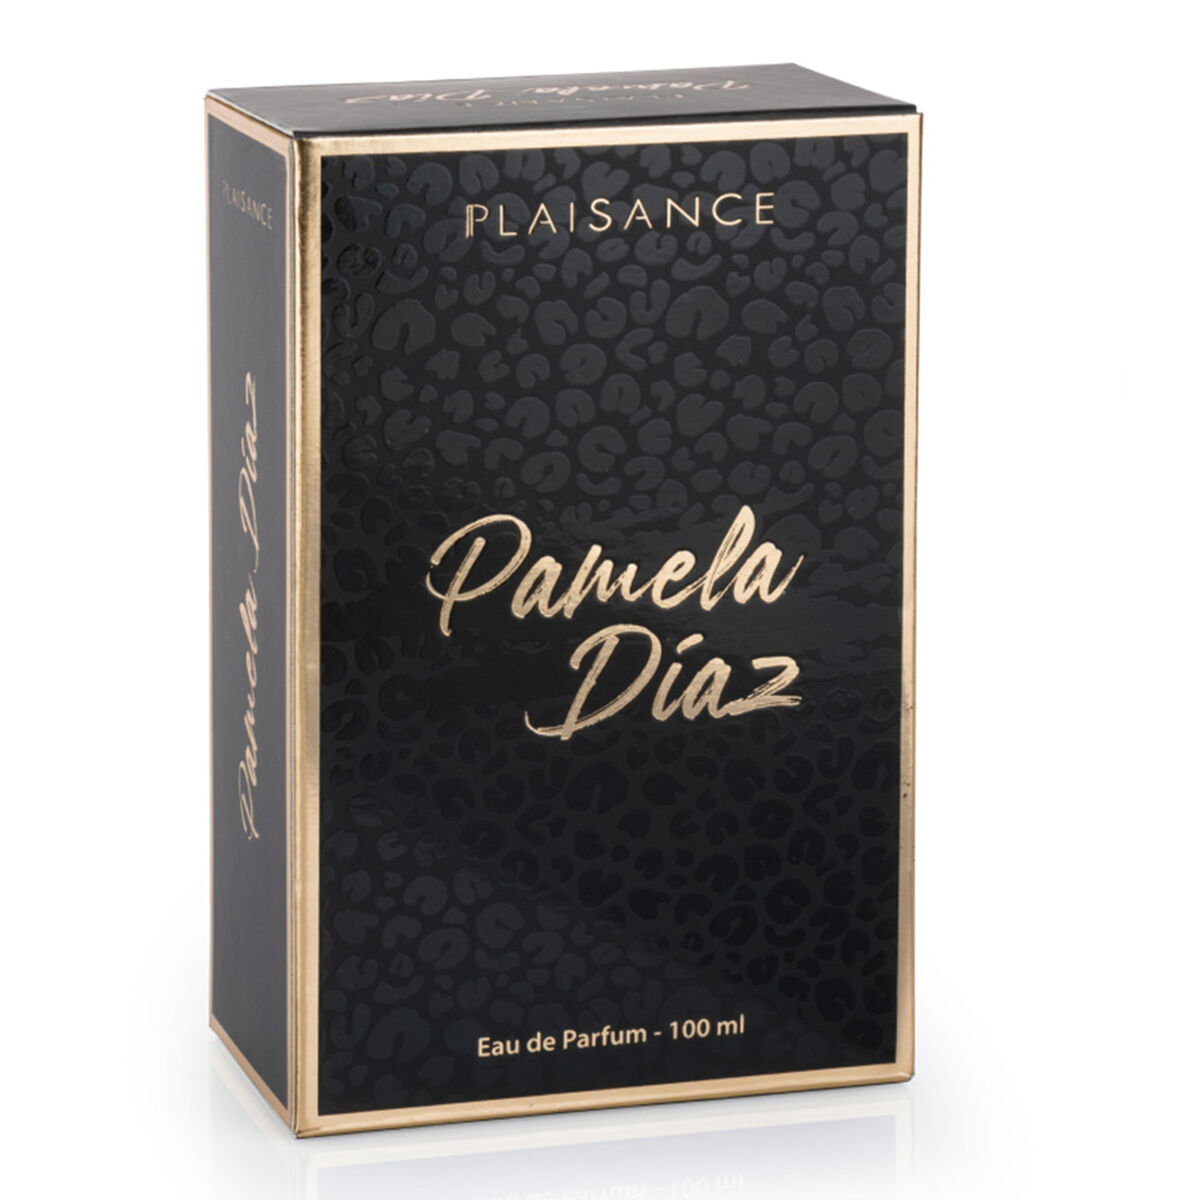 Perfume Plaisance Pamela Díaz  EDP 100 ml